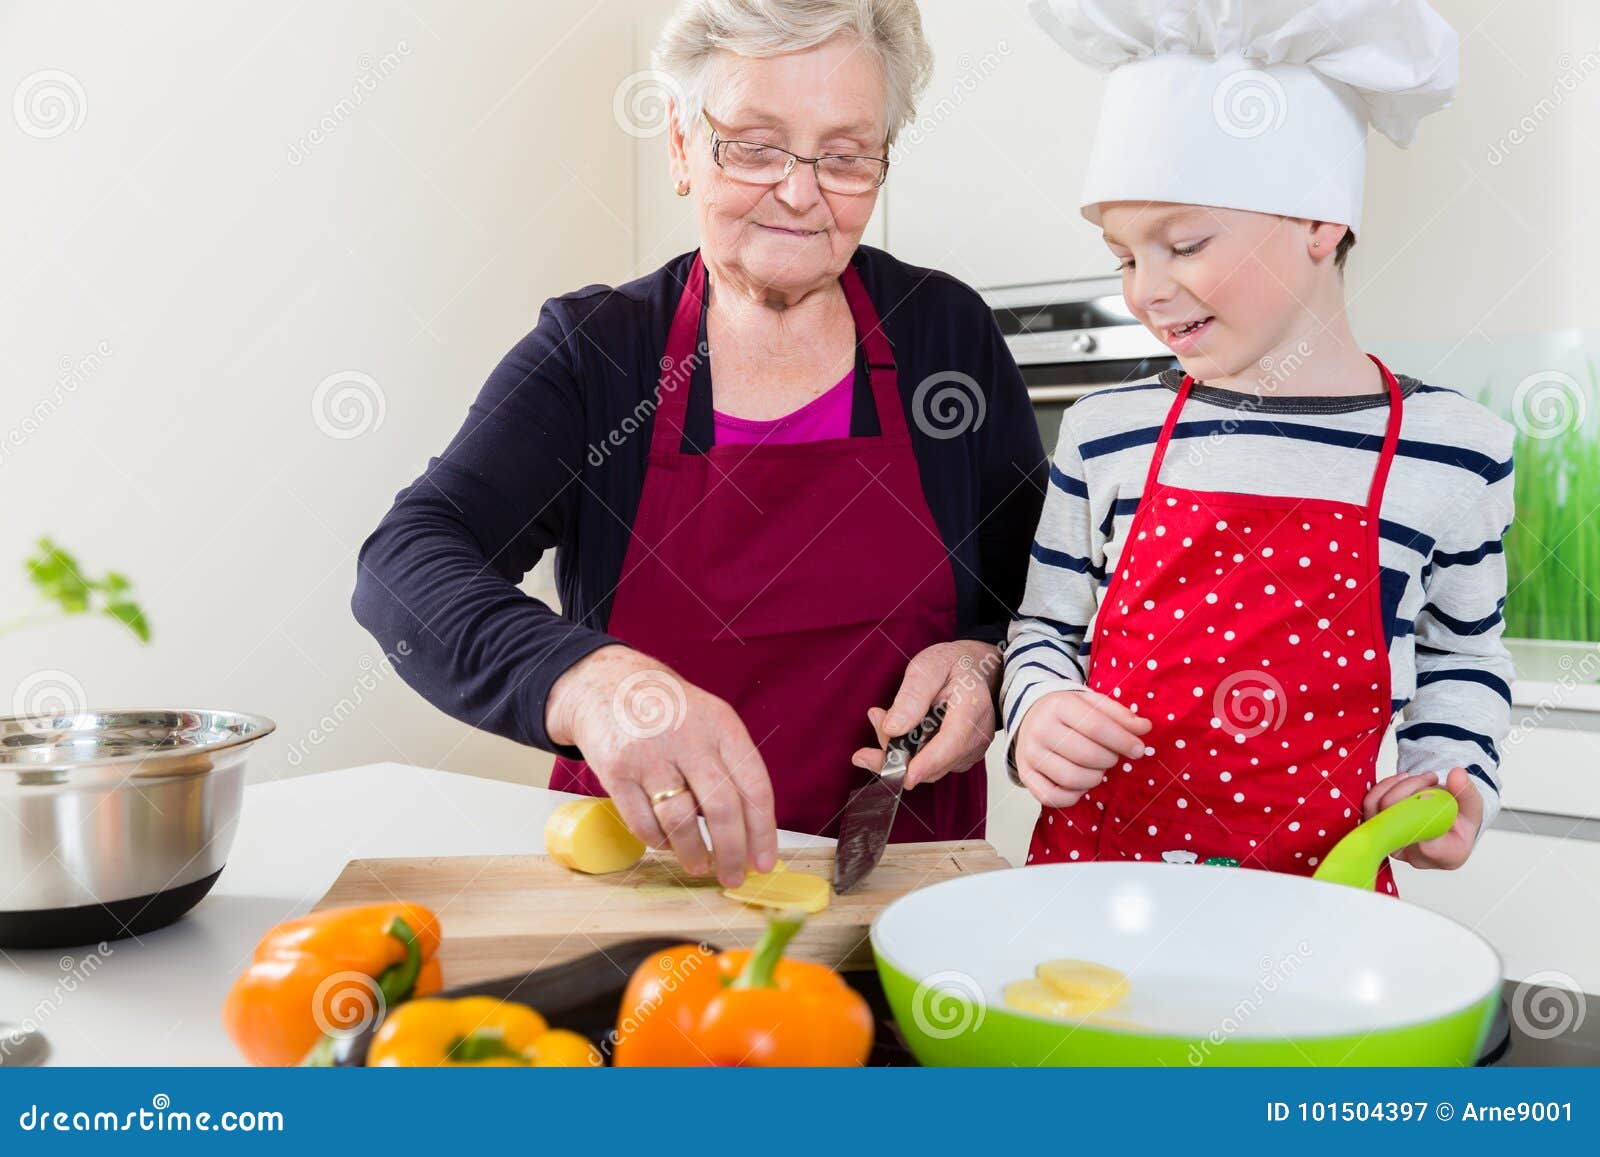 Granny Kitchen